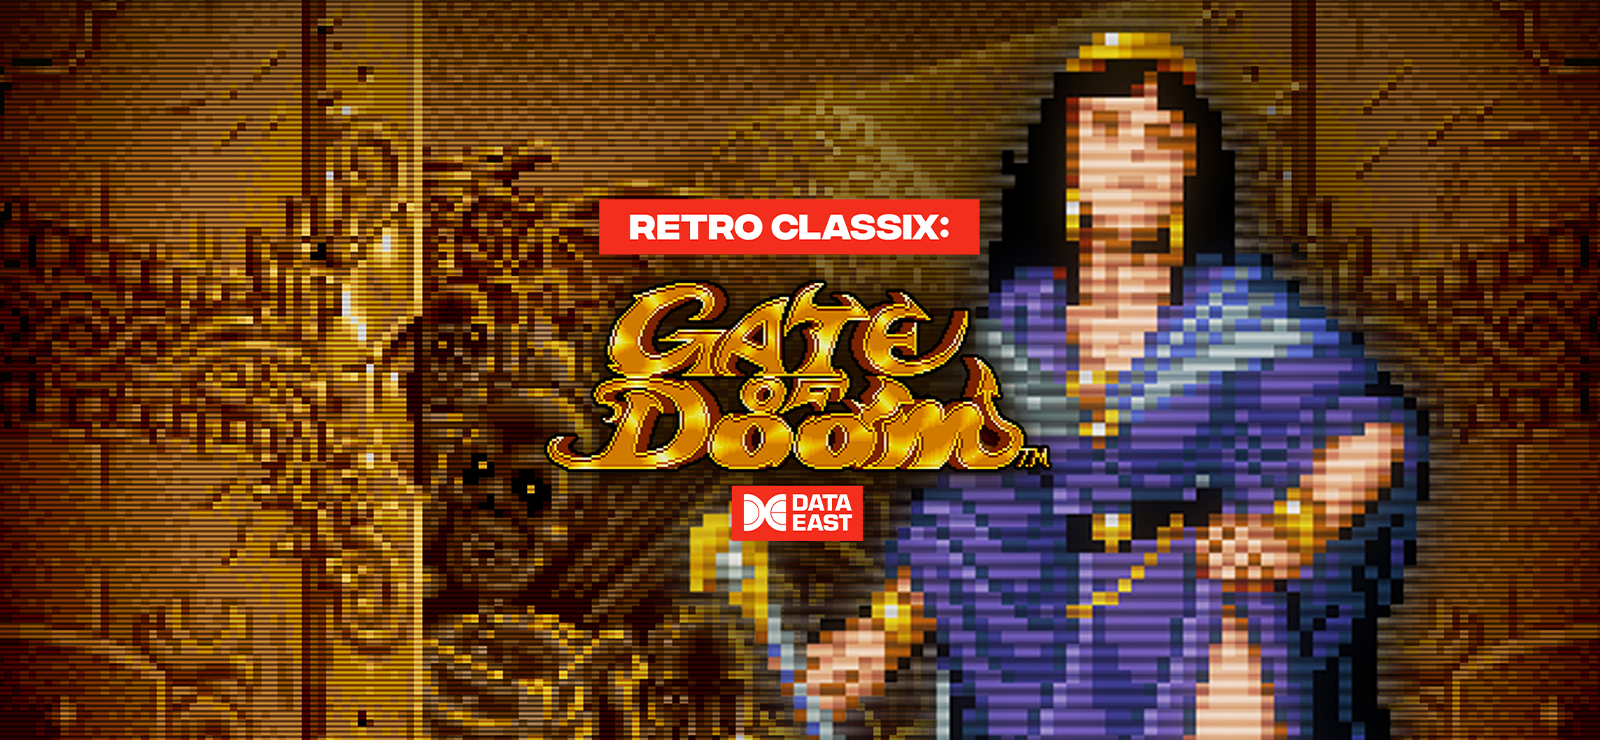 Retro Classix: Gate Of Doom